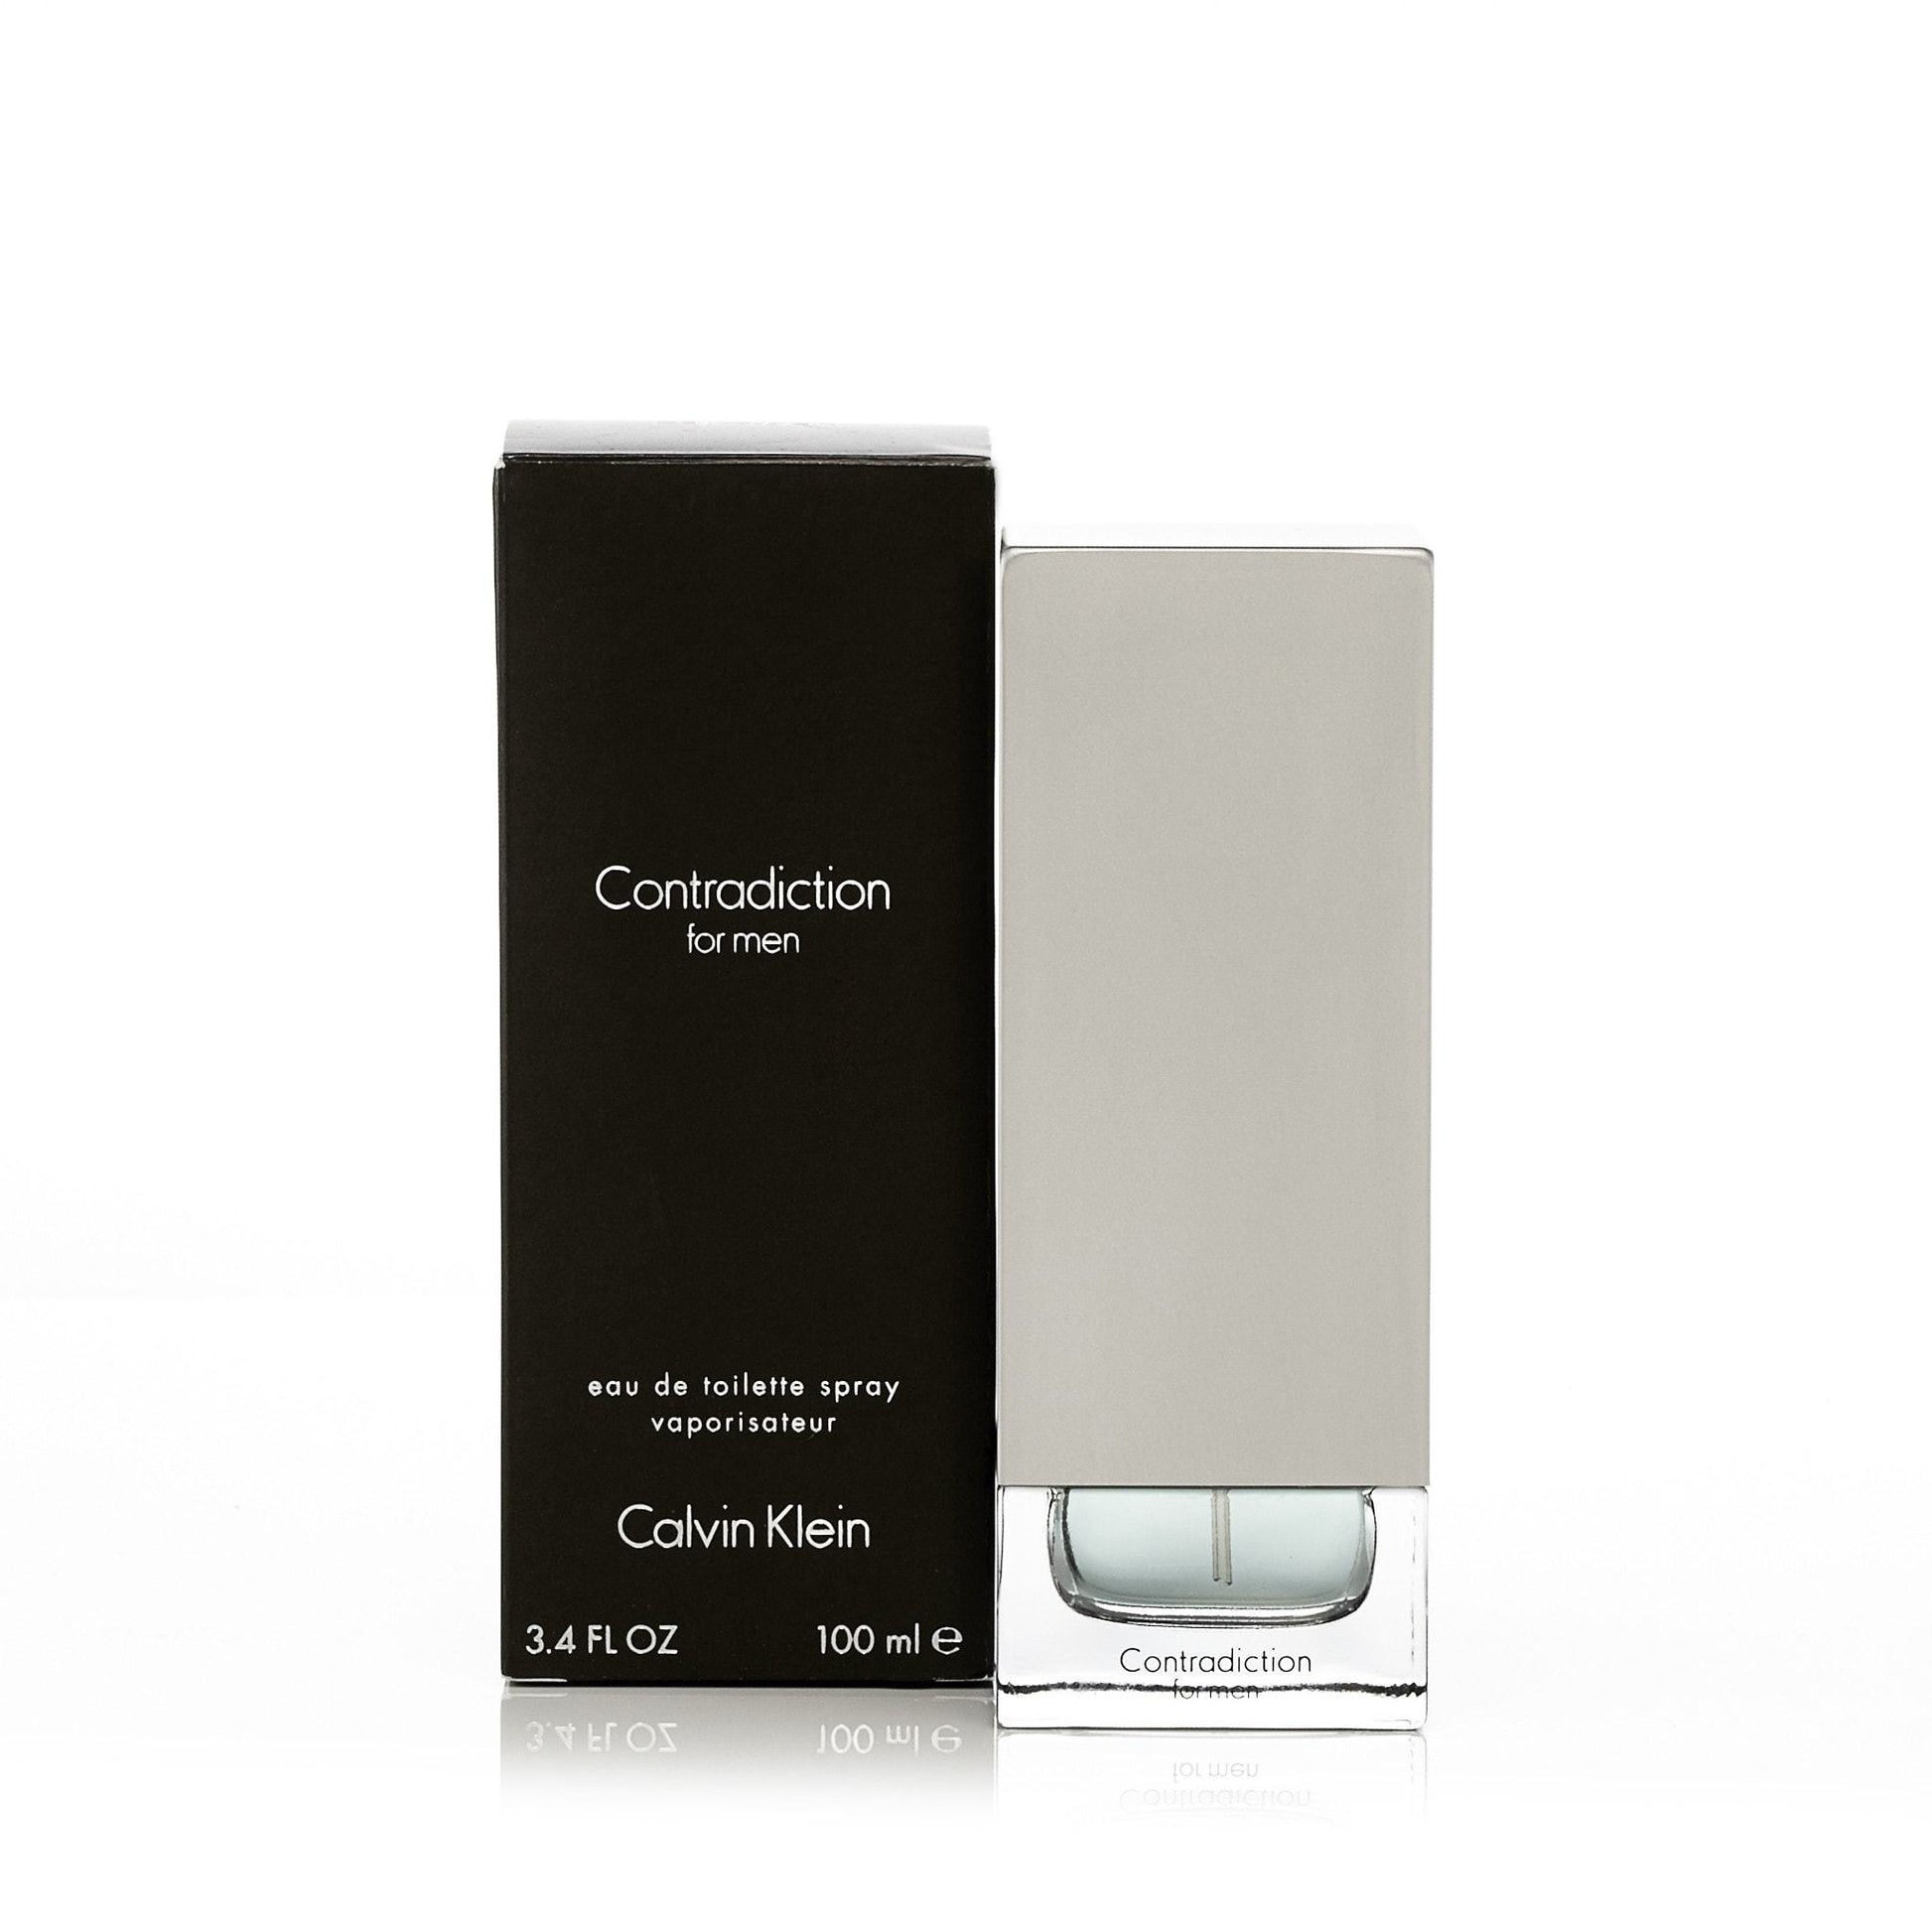 Contradiction Eau de Toilette Spray for Men by Calvin Klein, Product image 4